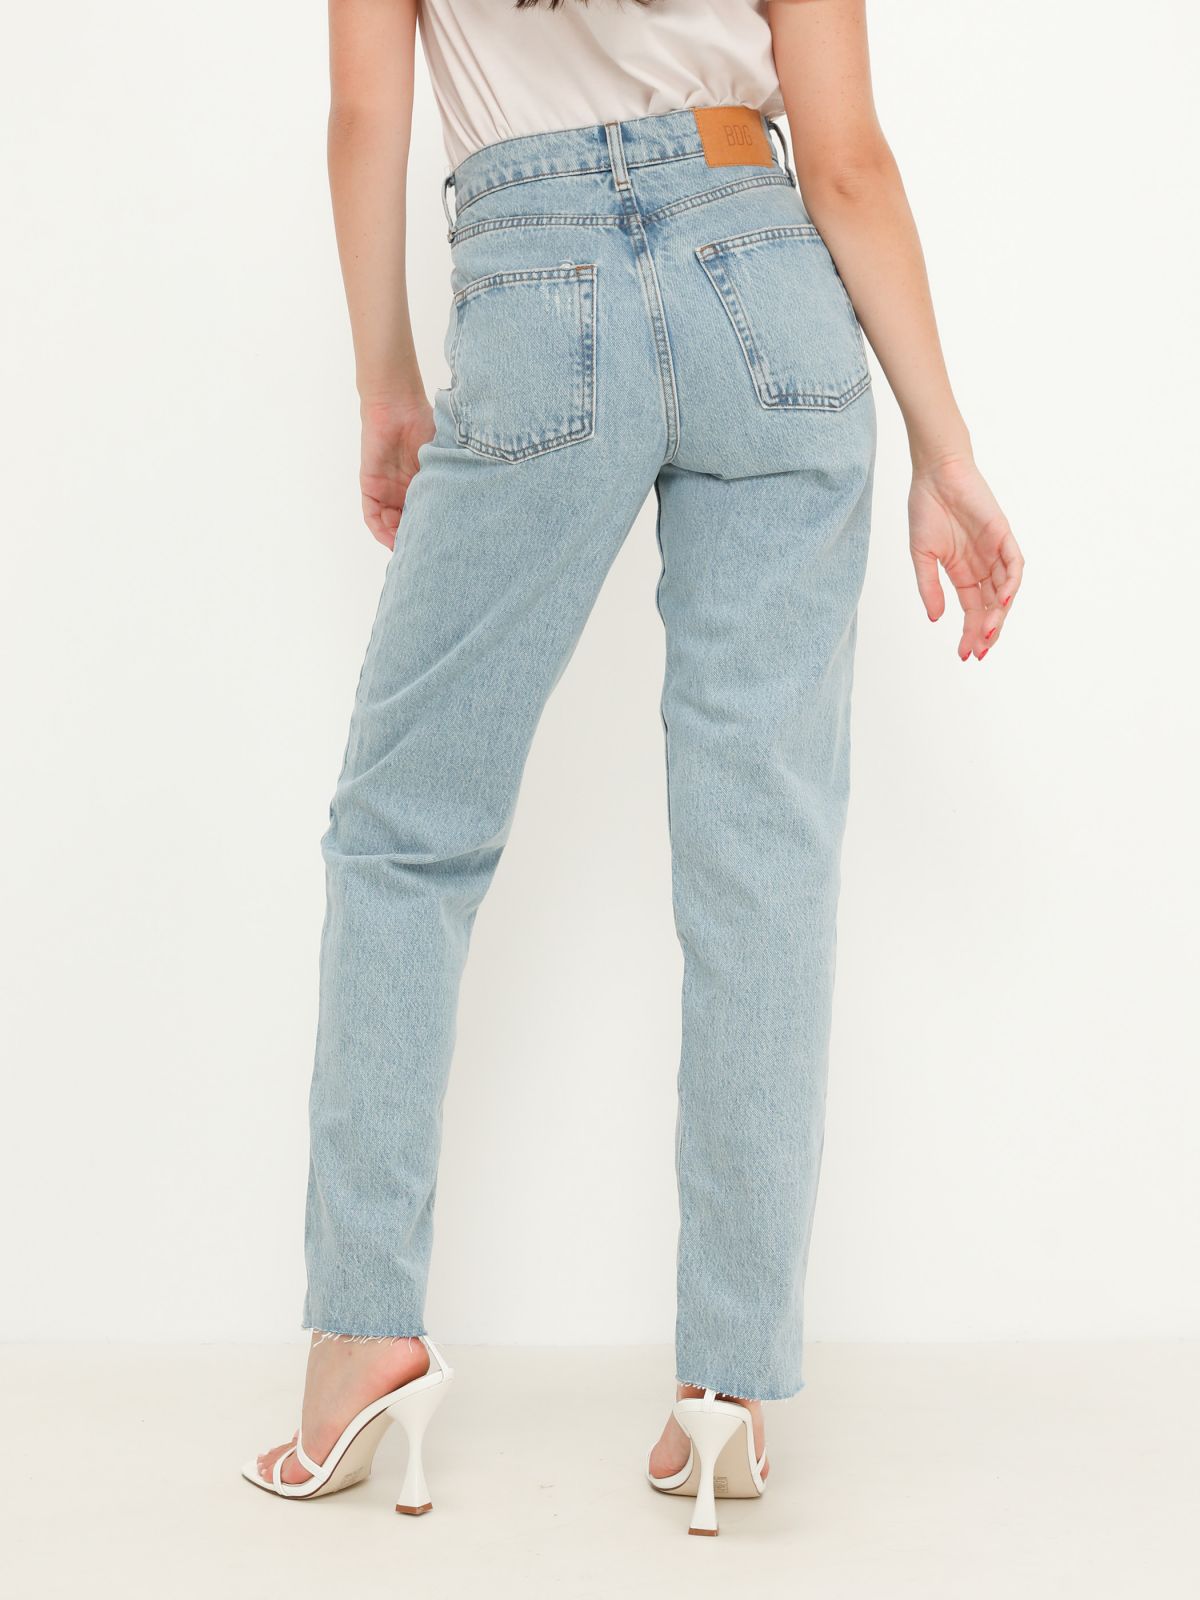  ג'ינס בגזרה גבוה בסיומת גזורה של URBAN OUTFITTERS